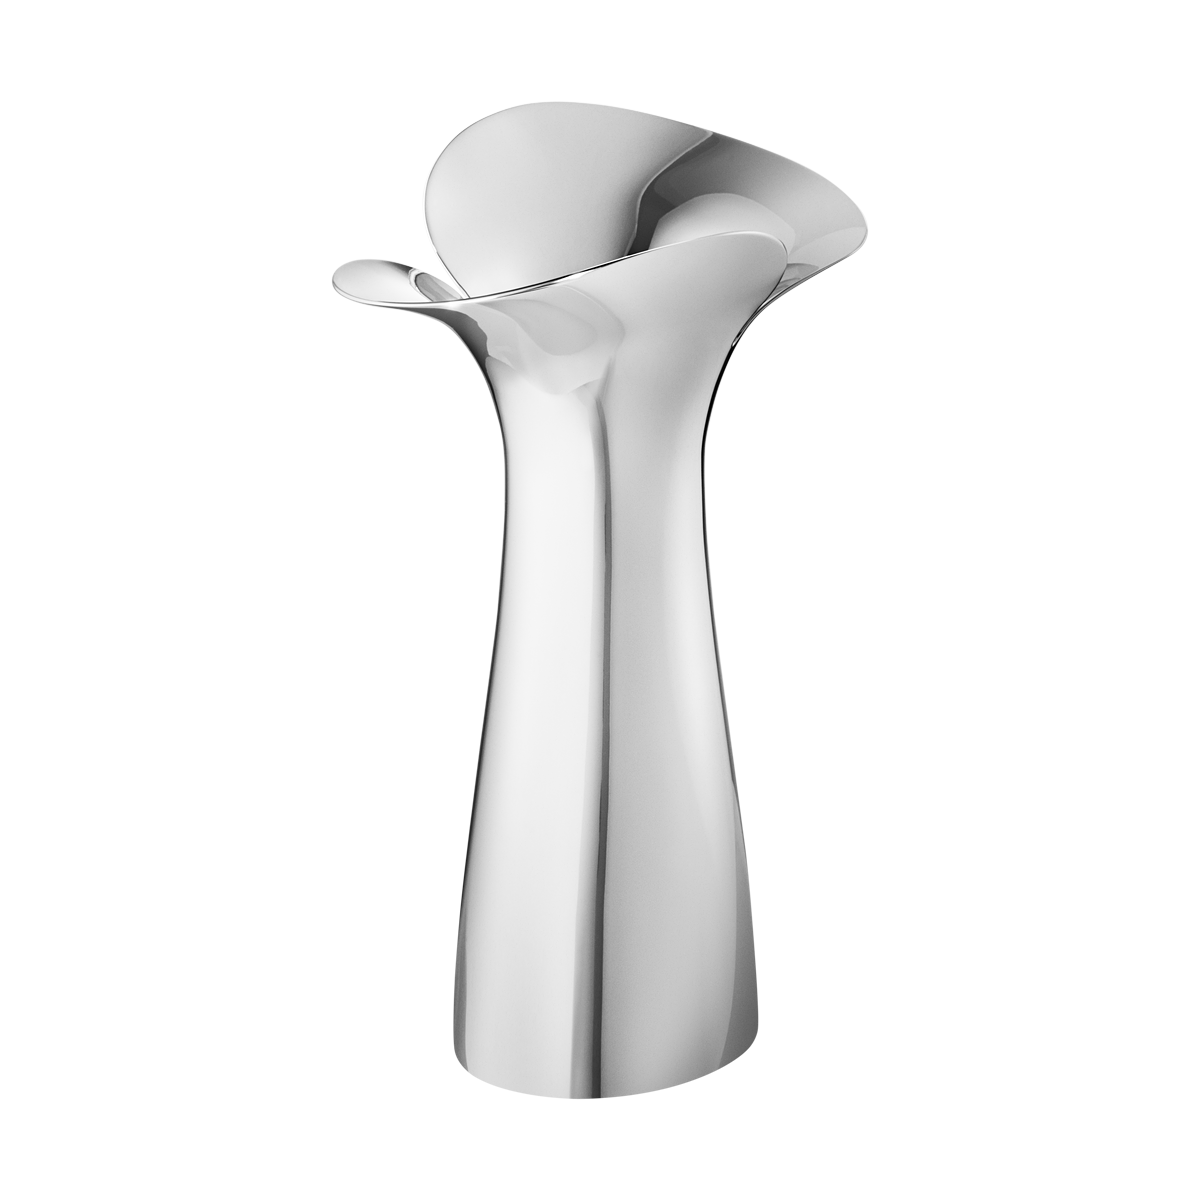 BLOOM BOTANICA medium vase in stainless steel